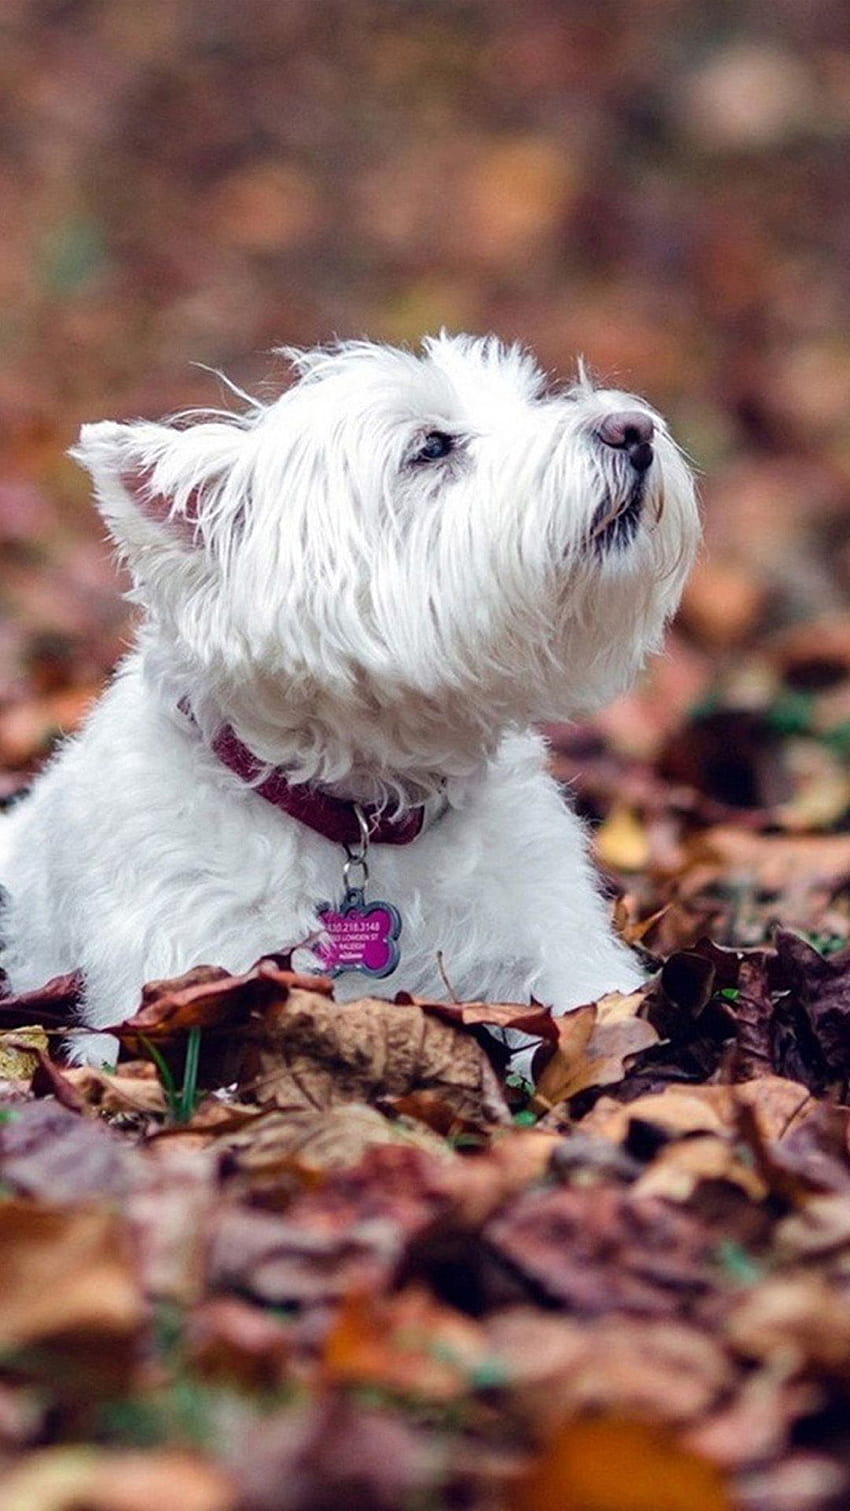 Chú chó West Highland White Terrier đáng yêu này chắc chắn sẽ làm bạn bật ngửa trái tim. Với bộ lông mềm mại, đôi mắt to tròn và nụ cười ngọt ngào, chú chó này sẽ làm nổi bật màn hình điện thoại của bạn. Nhấn vào hình ảnh và đắm mình trong niềm yêu thương và sự dễ thương của chú chó này.